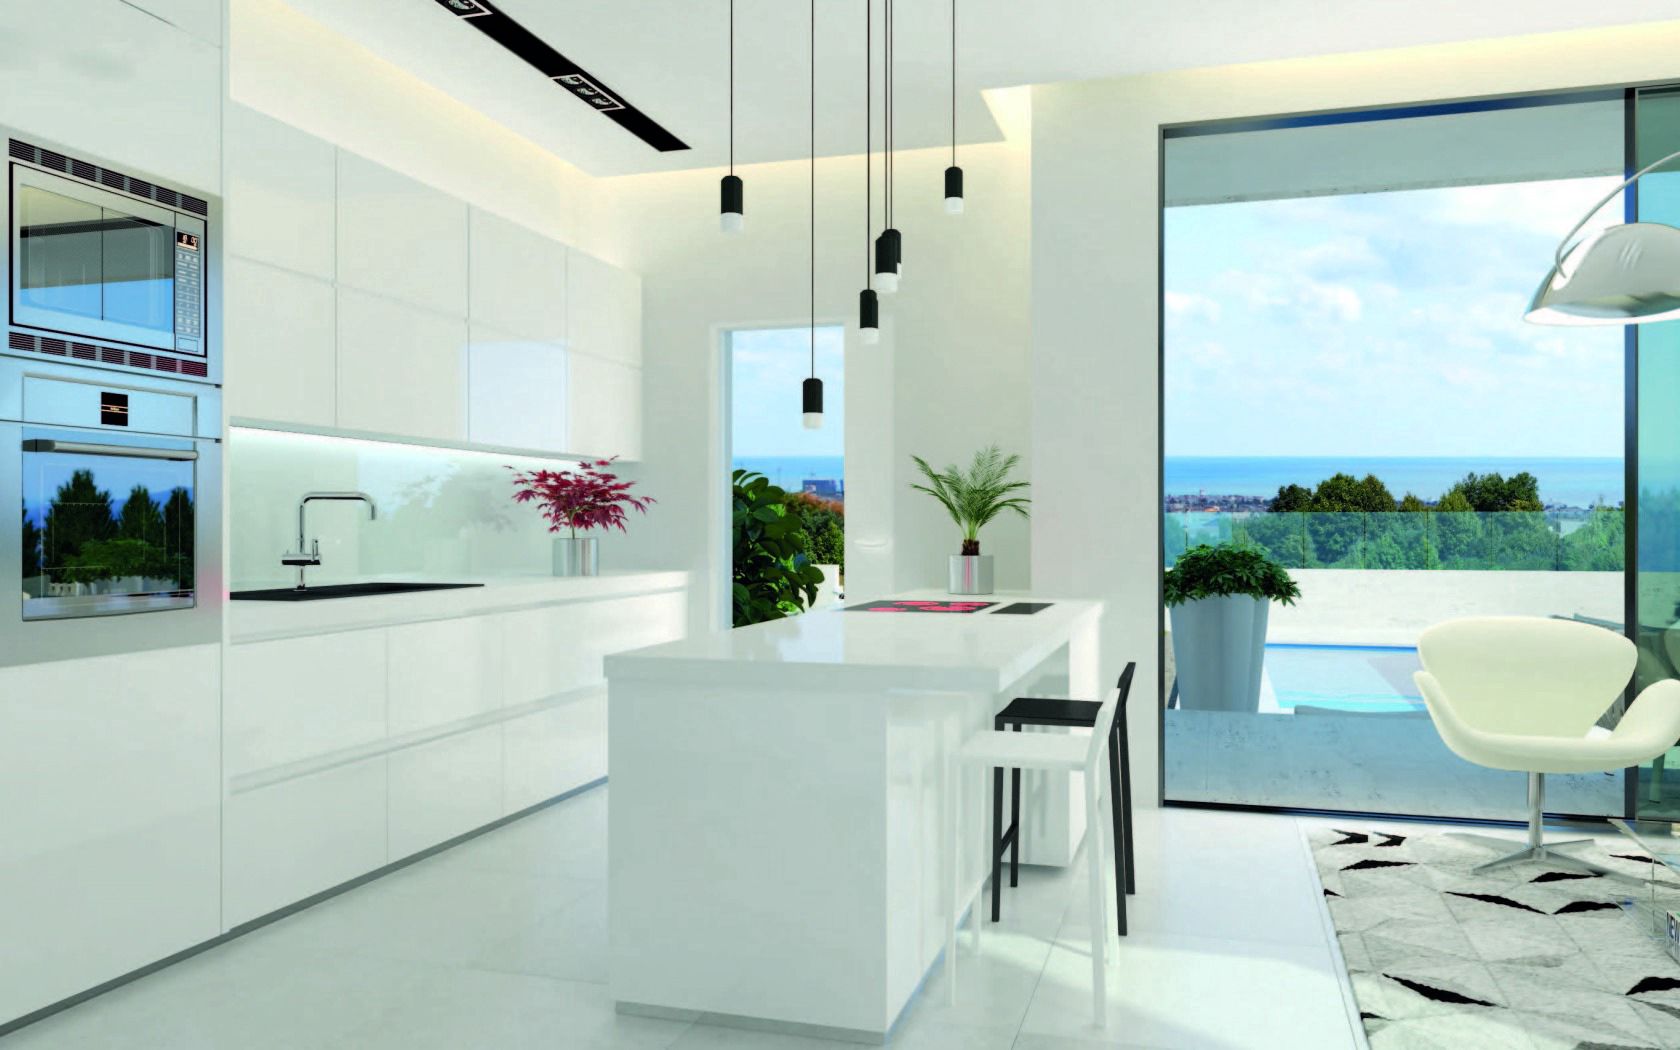 Free HD furniture, design, interior, miscellanea, miscellaneous, style, kitchen